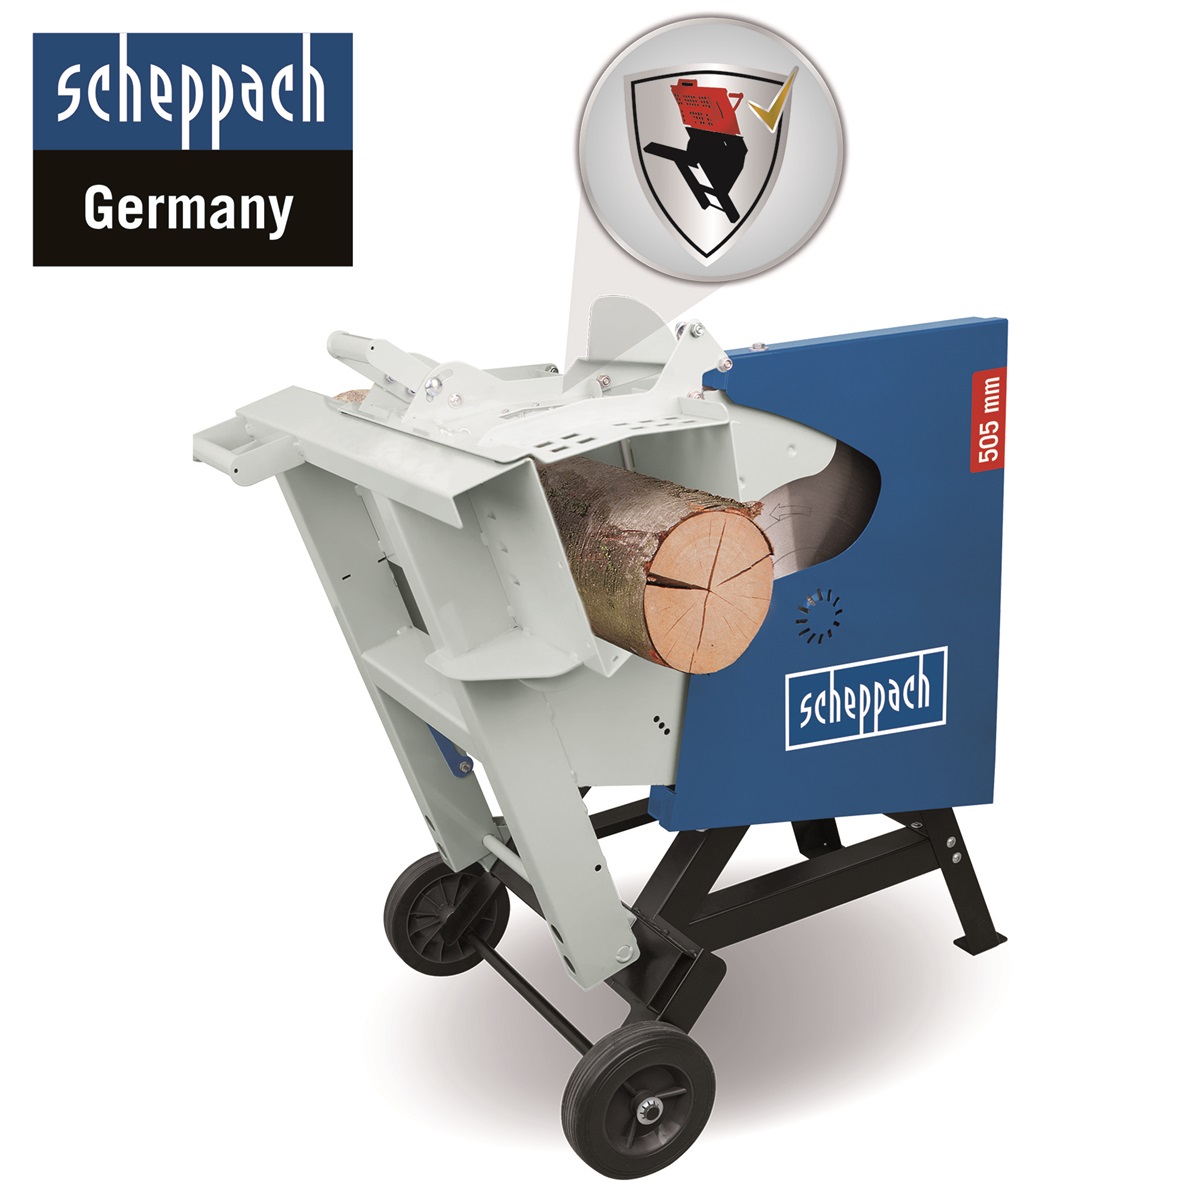 Scheppach HS 520